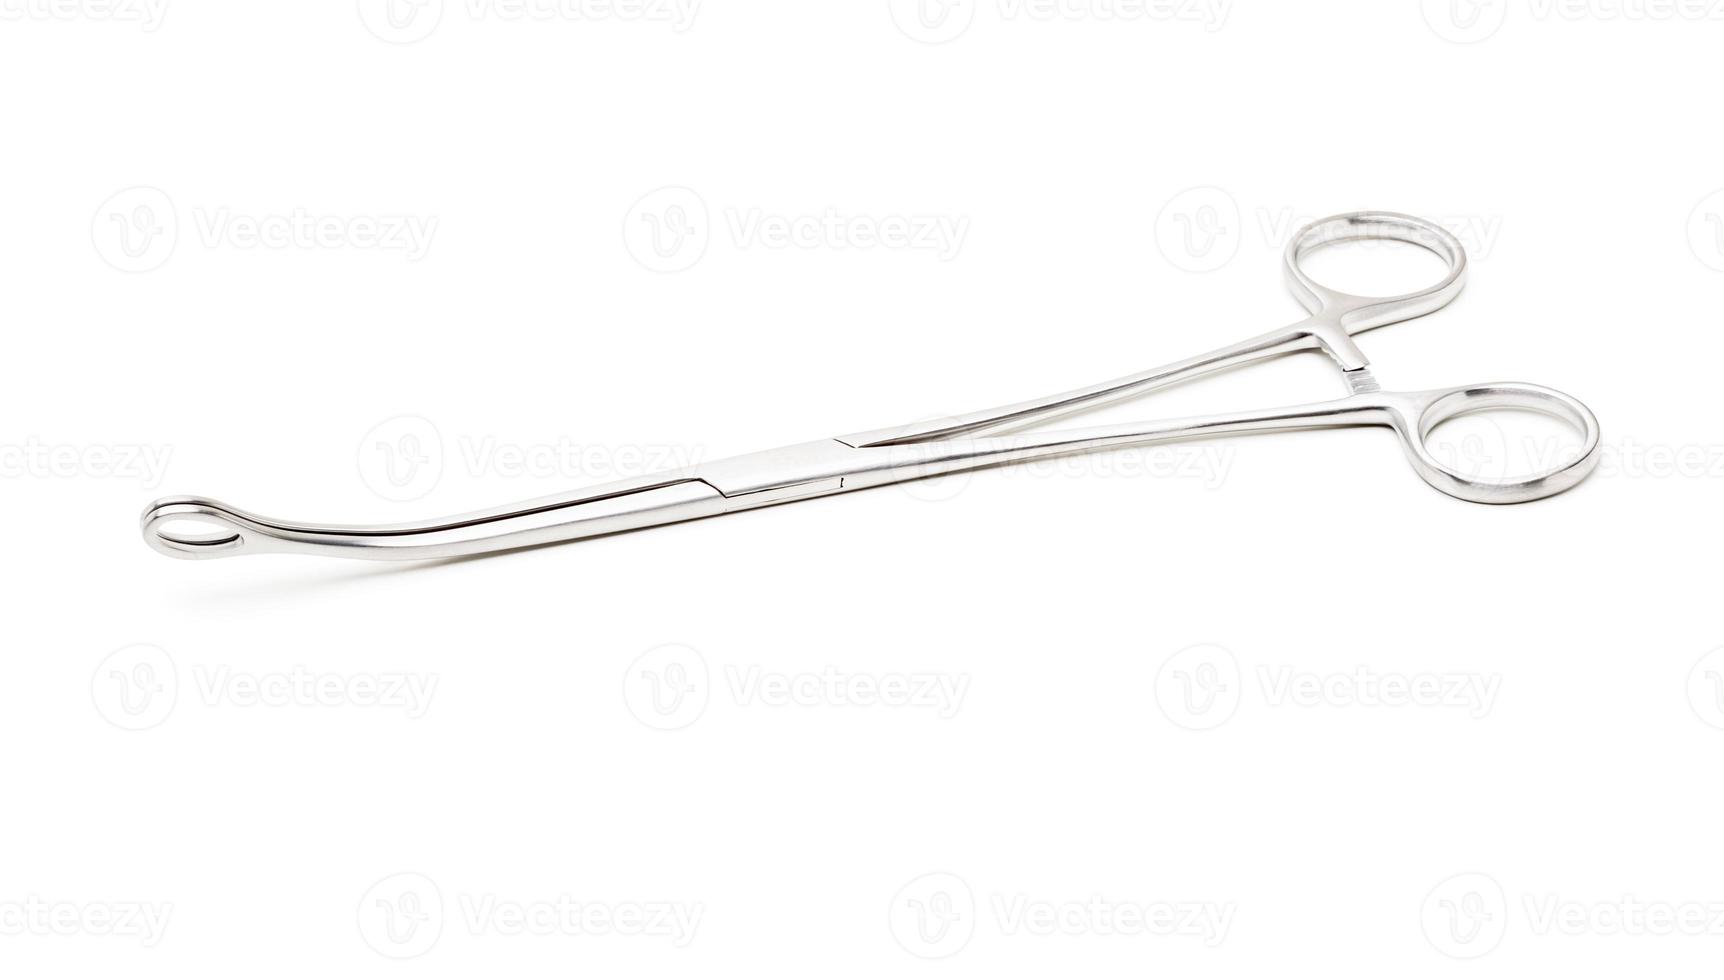 instrumento médico cirúrgico de precisão de aço inoxidável isolado no fundo branco foto